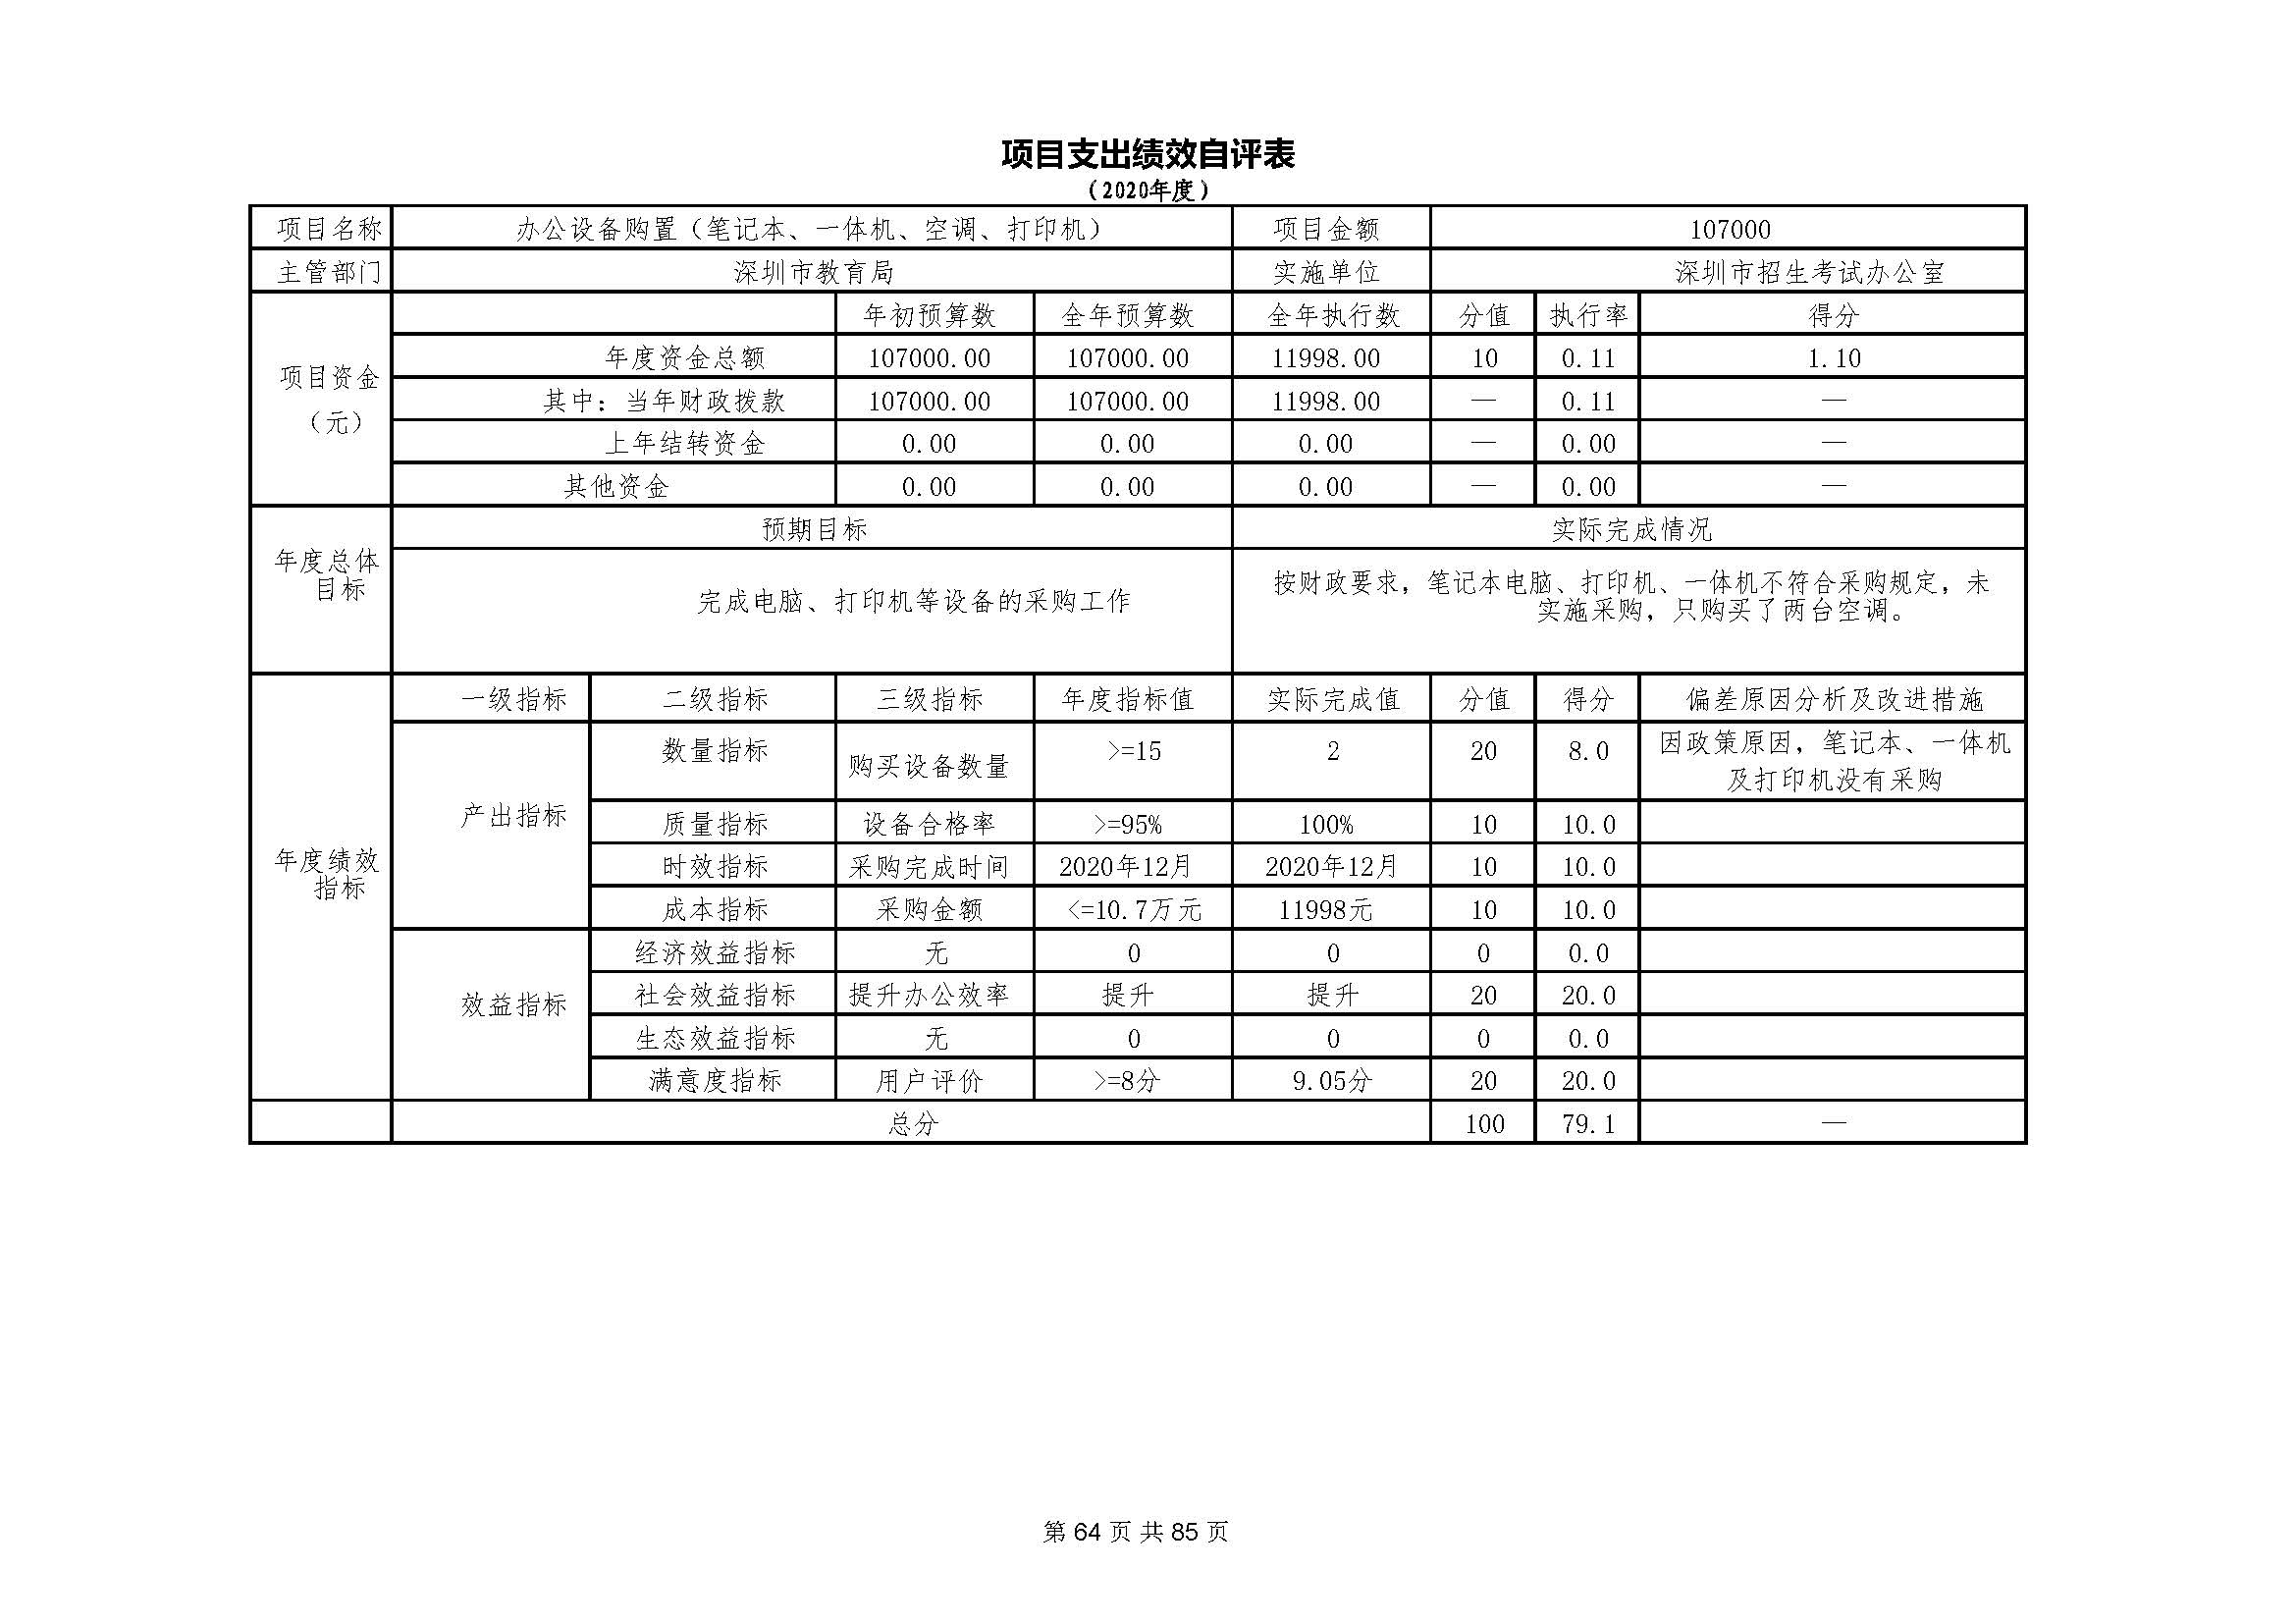 深圳市招生考试办公室2020年度部门决算_页面_65.jpg